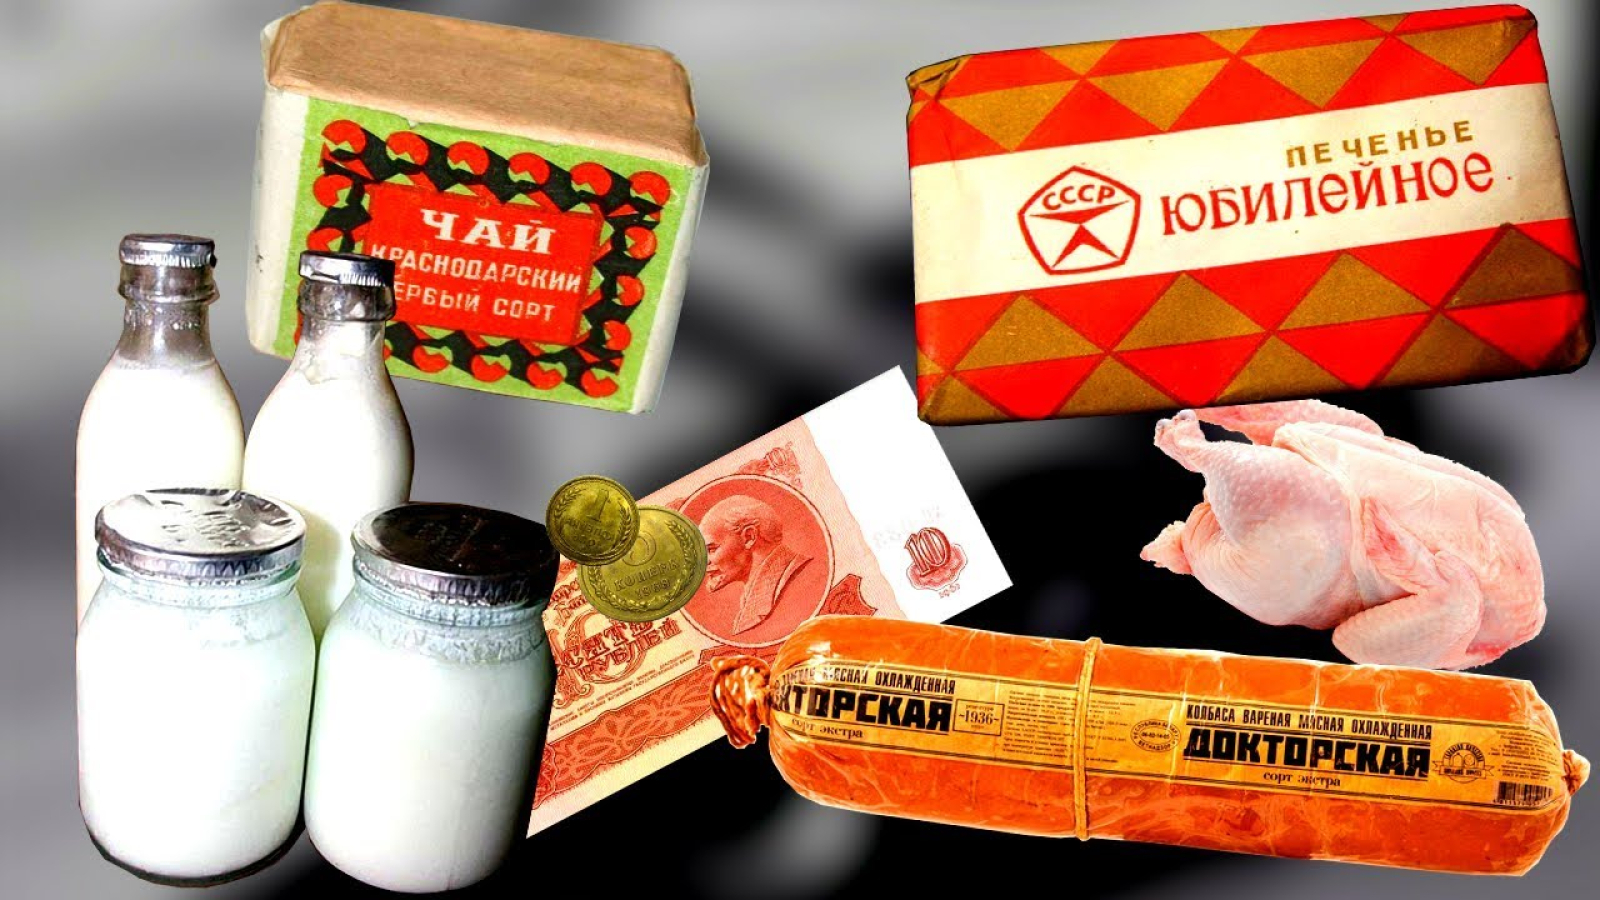 Мои то были купле. Продукты СССР. Советские вещи и продукты. Советская продуктовая упаковка. Упаковка продуктов питания в СССР.